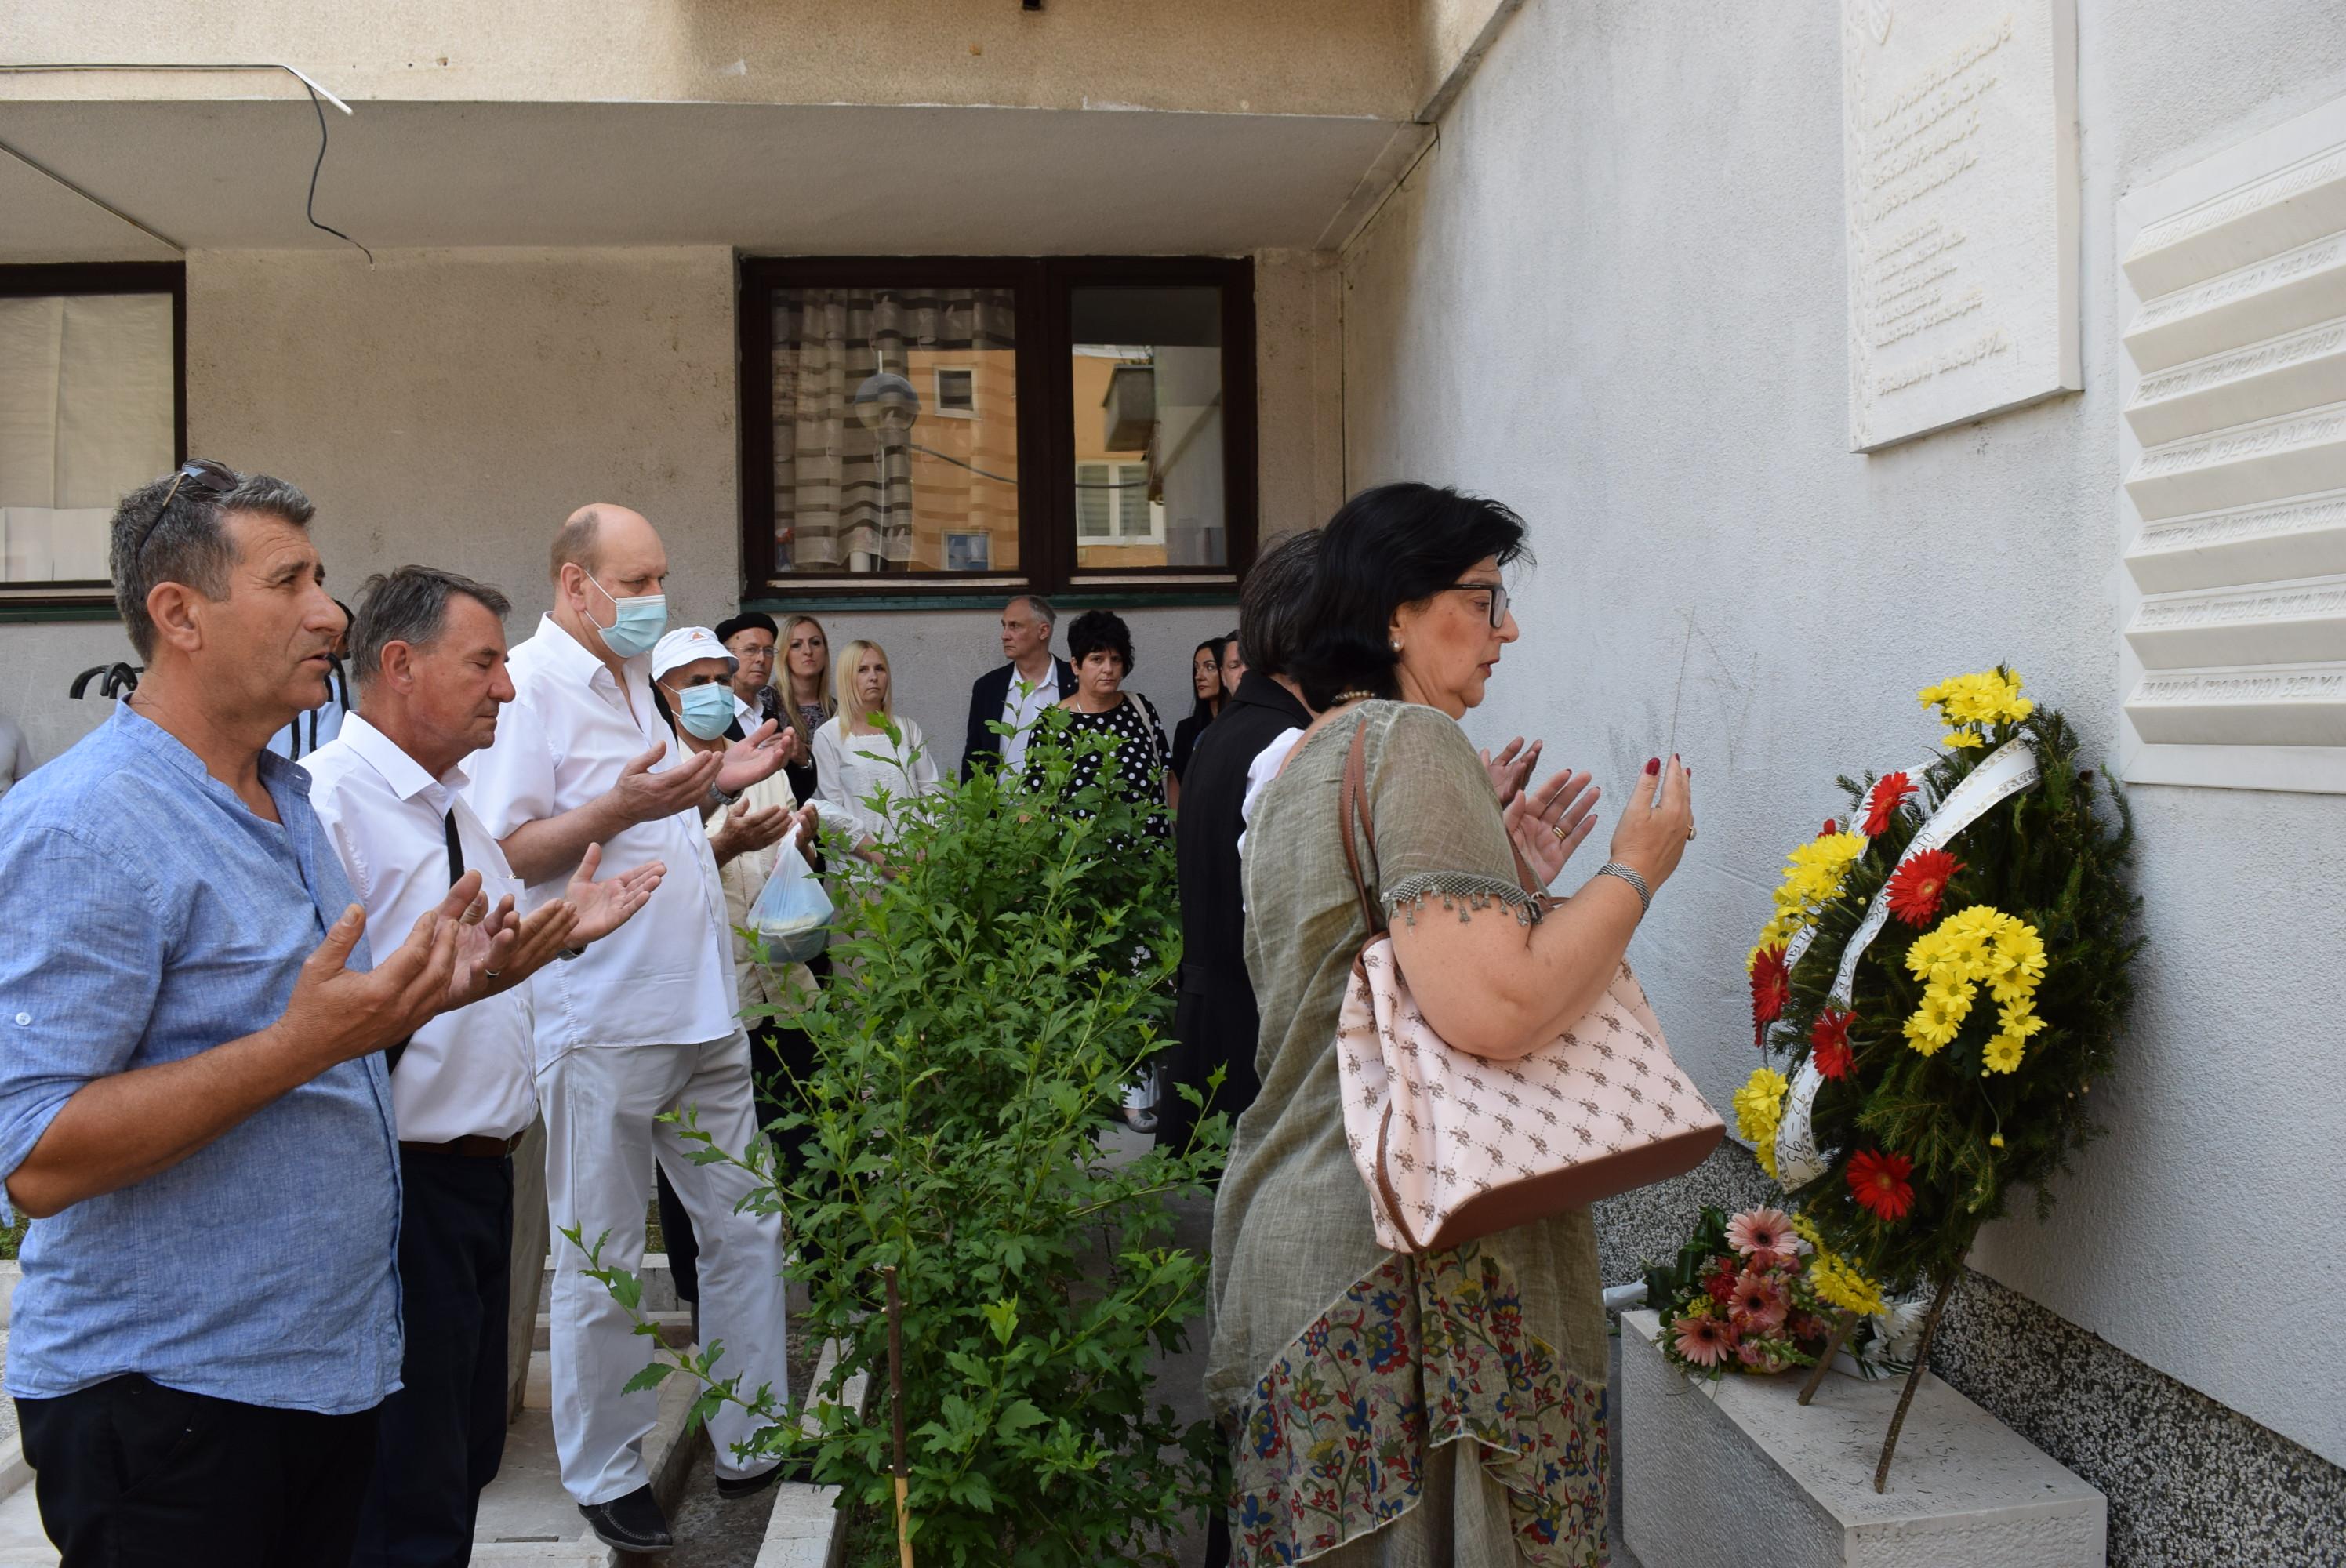 Obilježena godišnjica stradanja sedmero djece u Sarajevu